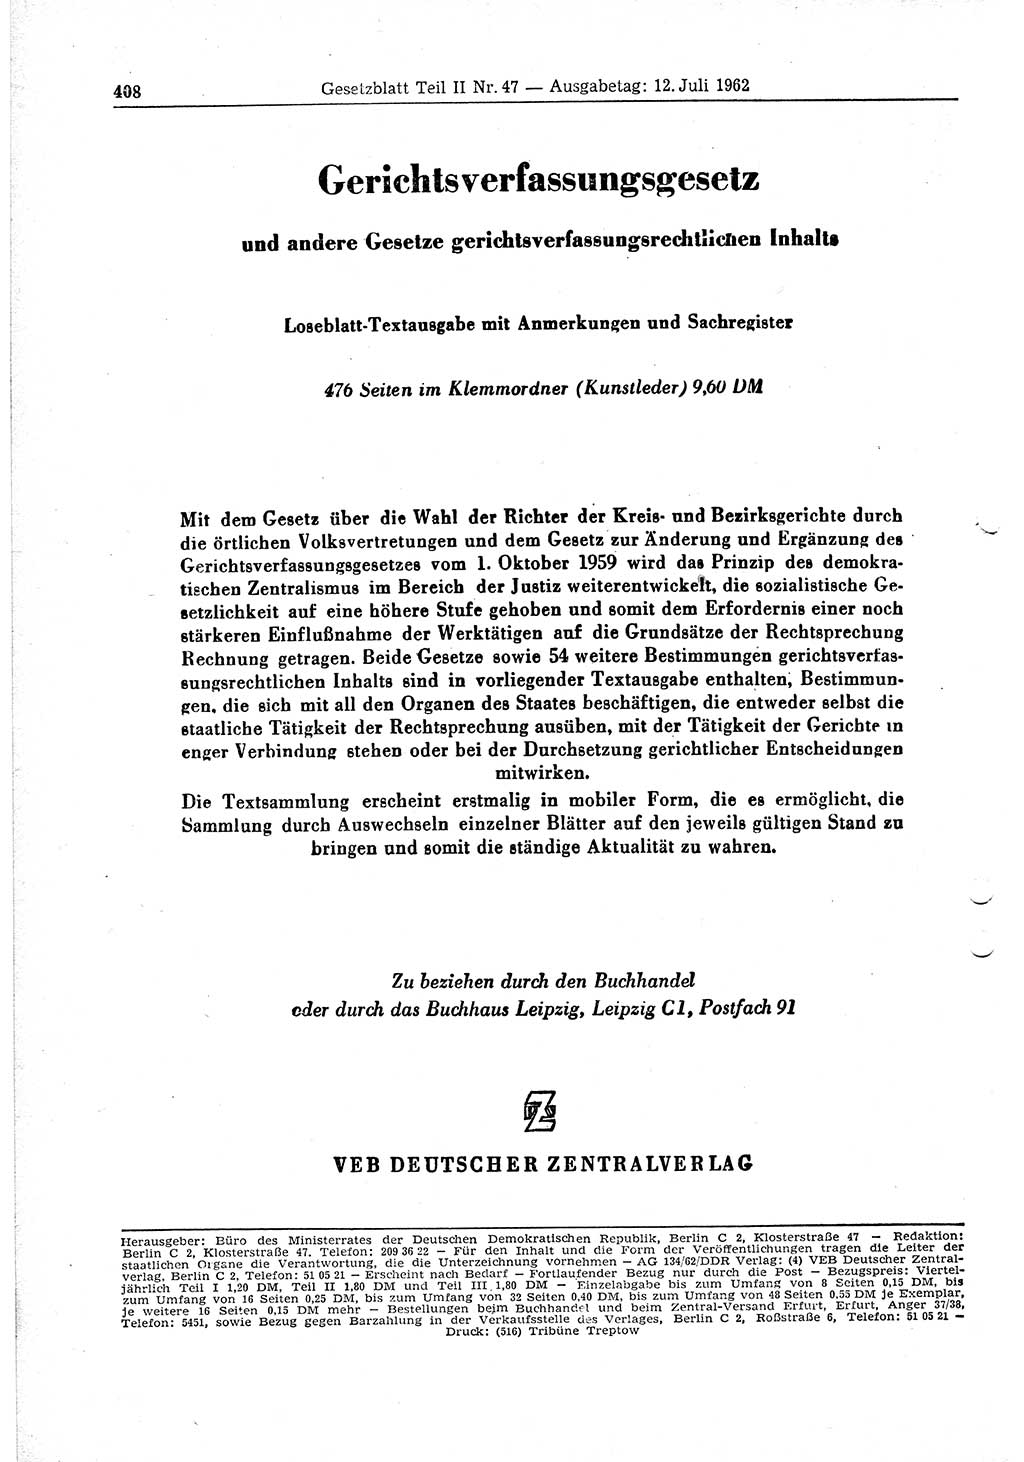 Gesetzblatt (GBl.) der Deutschen Demokratischen Republik (DDR) Teil ⅠⅠ 1962, Seite 408 (GBl. DDR ⅠⅠ 1962, S. 408)